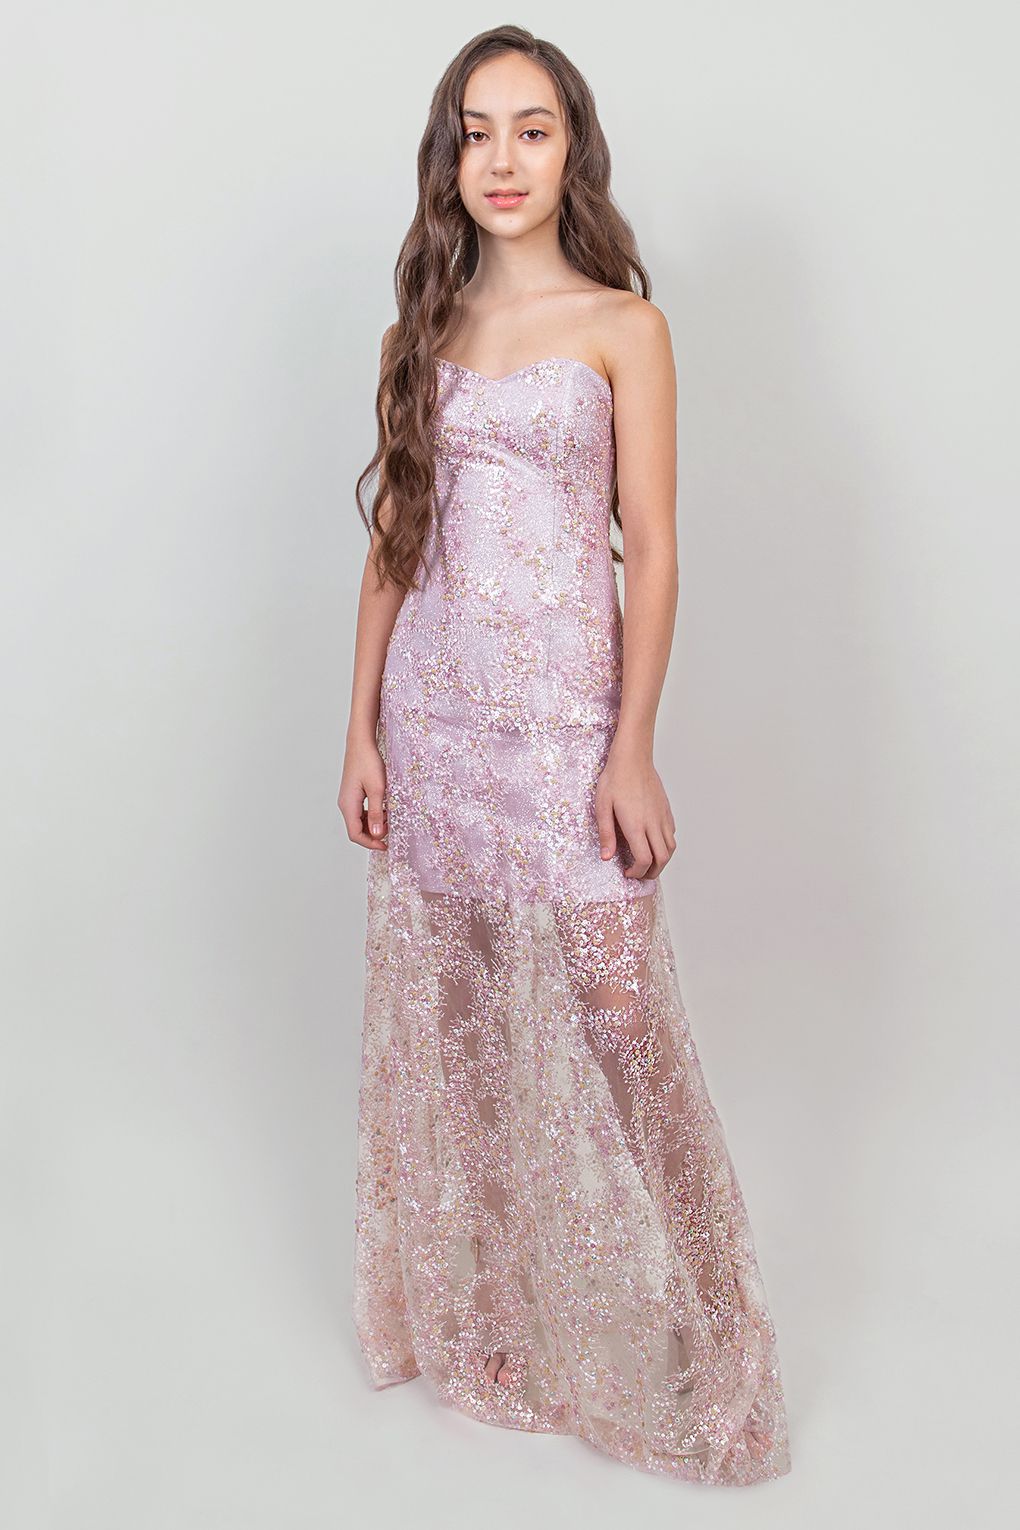 Платье женское Choupette 75.100 розовое M, розовый, женский  - купить